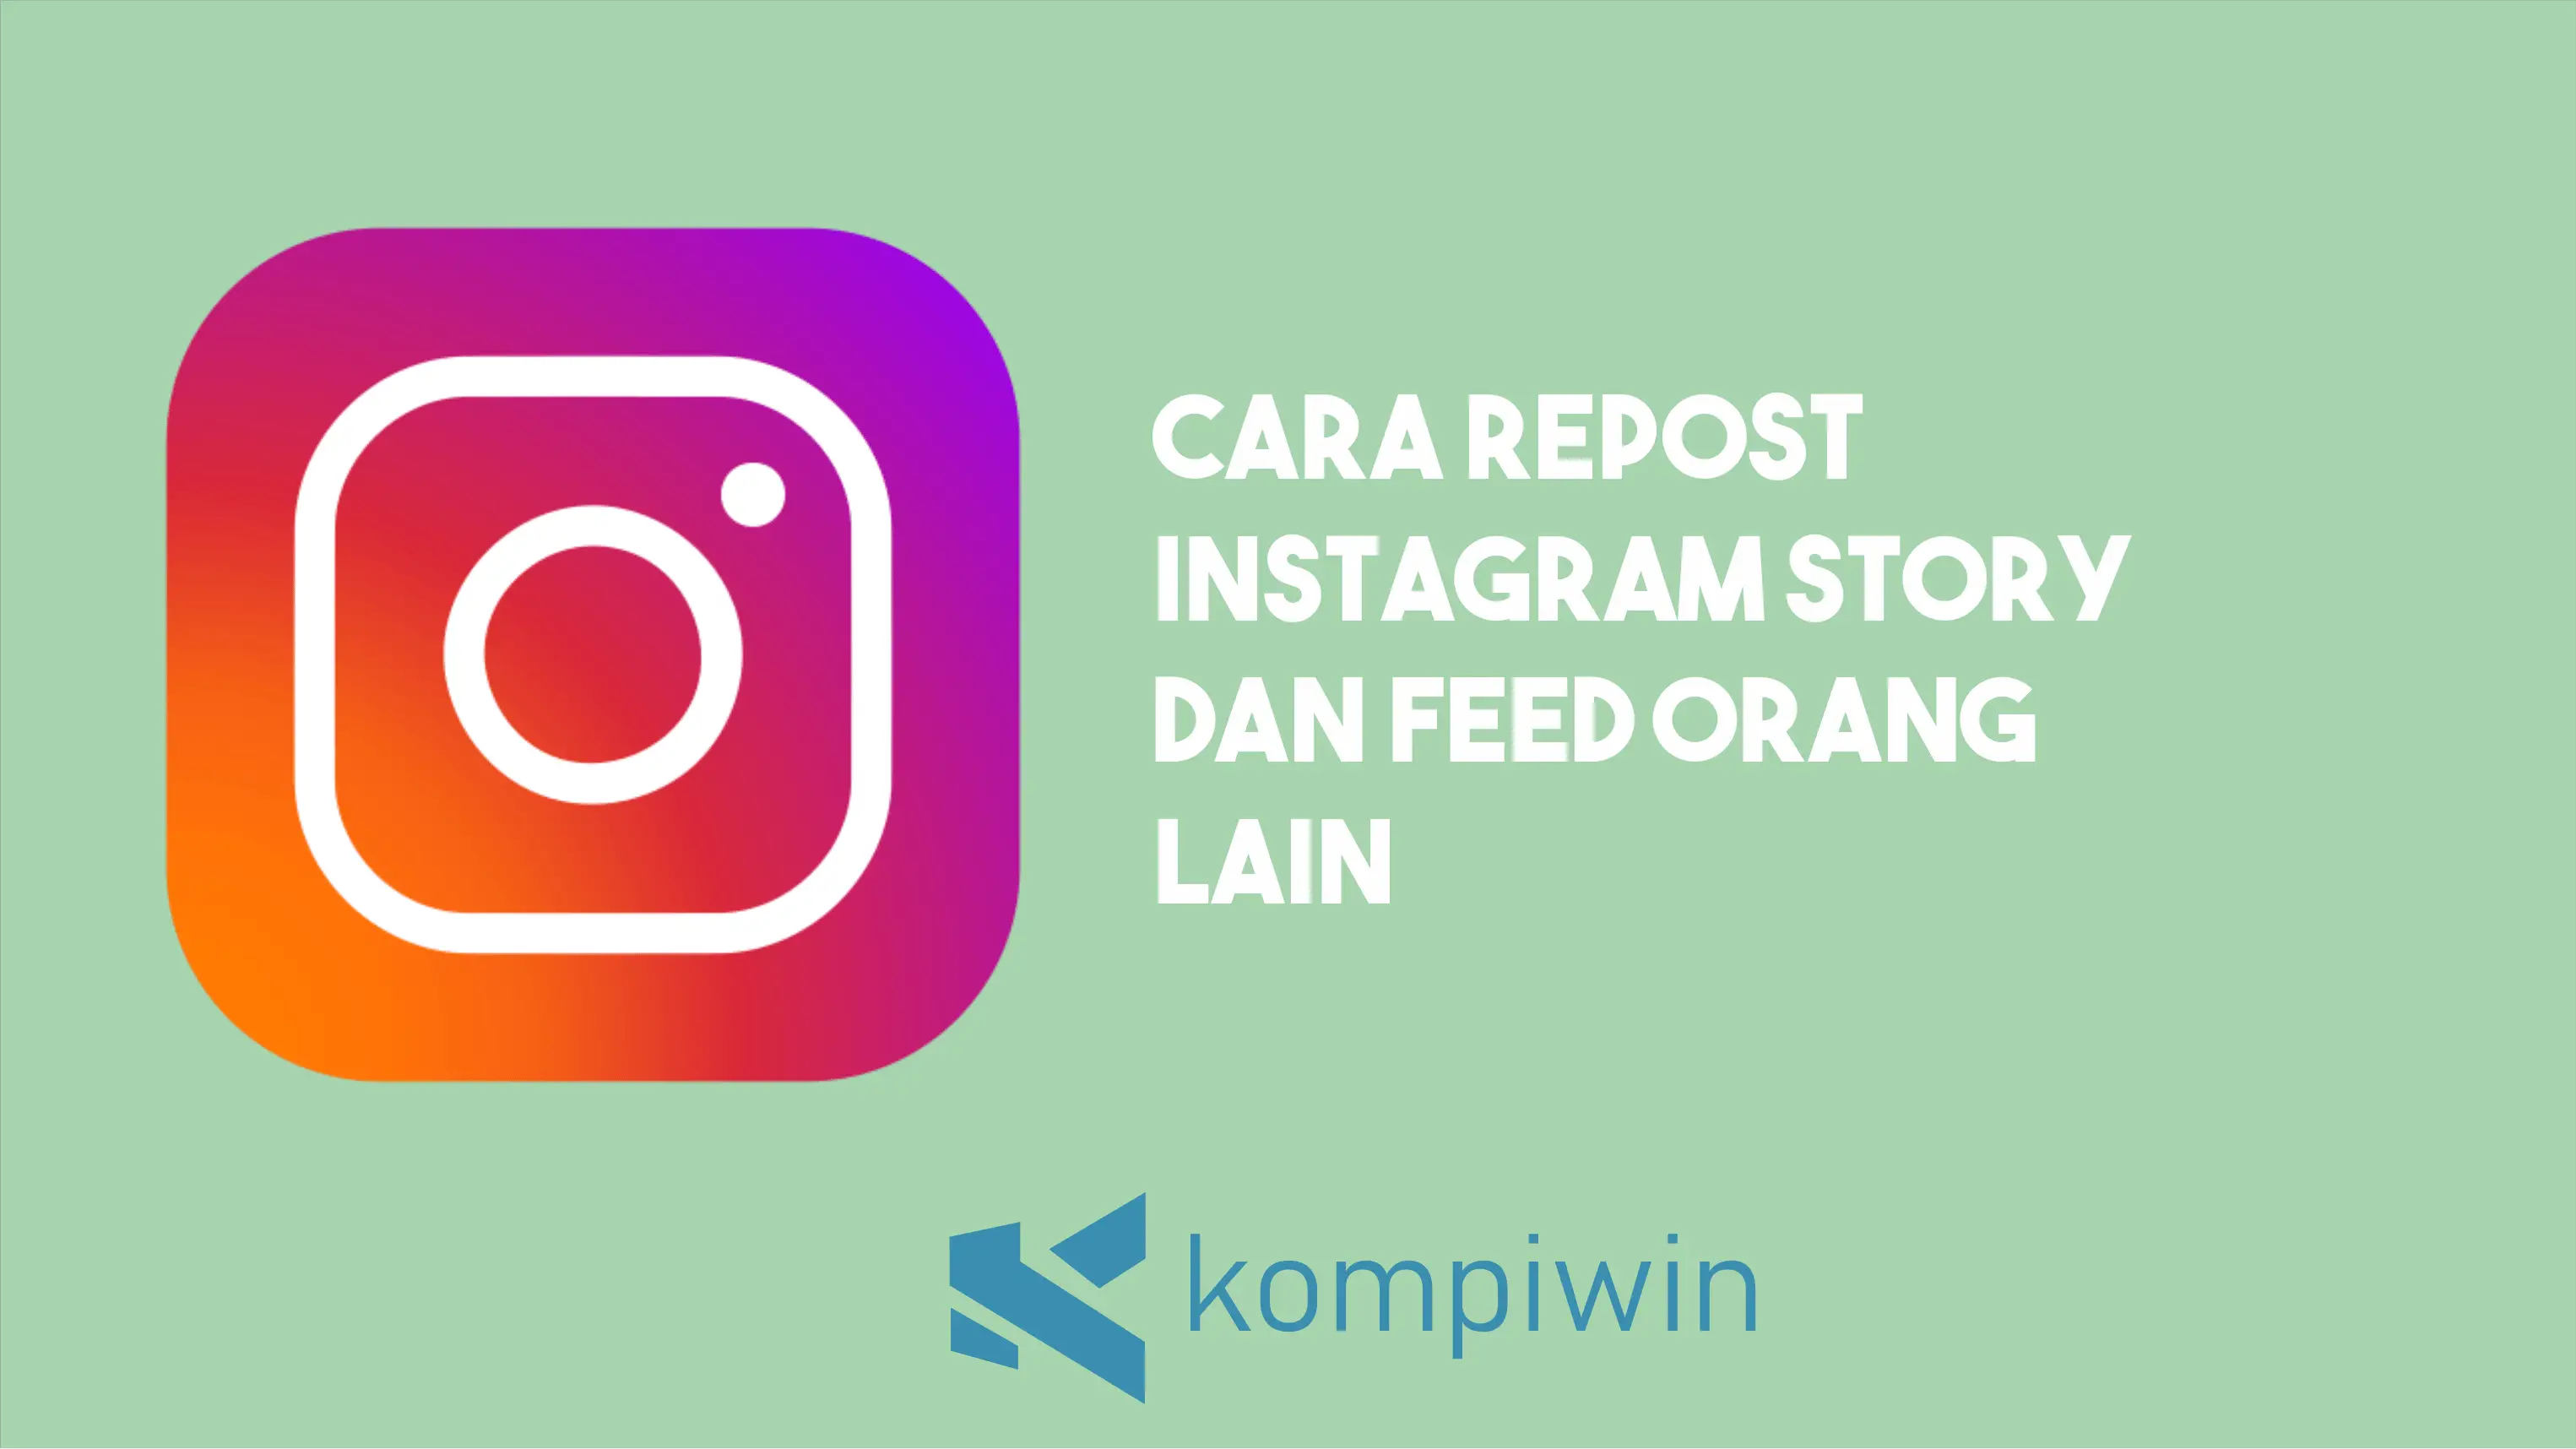 Cara Repost Instagram Story dan Feed Orang Lain 1